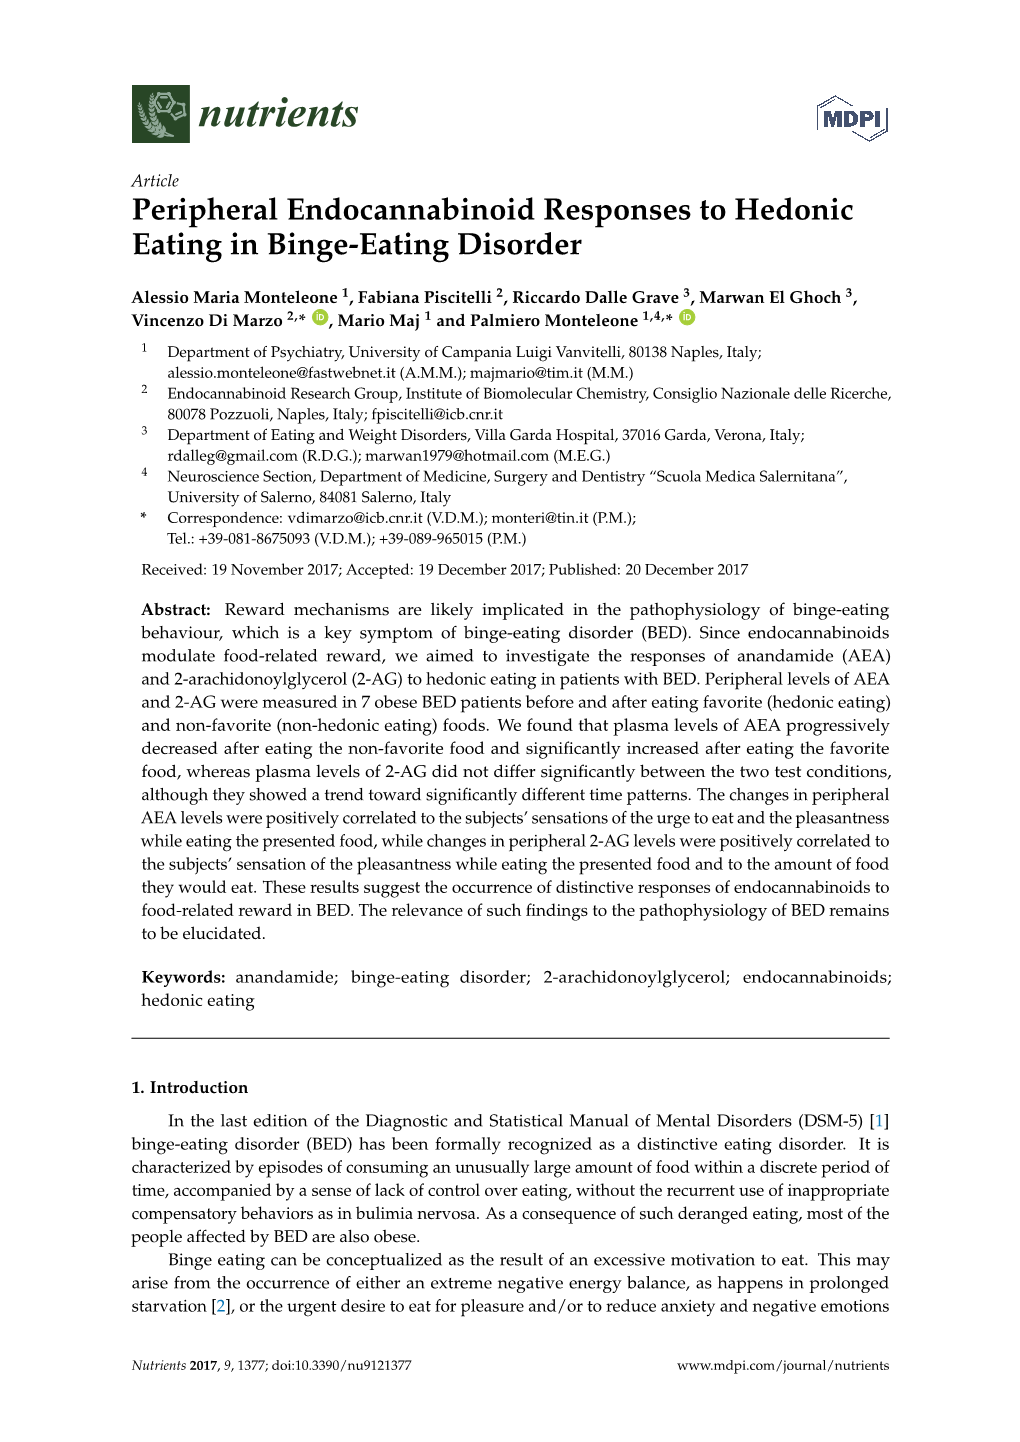 Peripheral Endocannabinoid Responses to Hedonic Eating in Binge-Eating Disorder